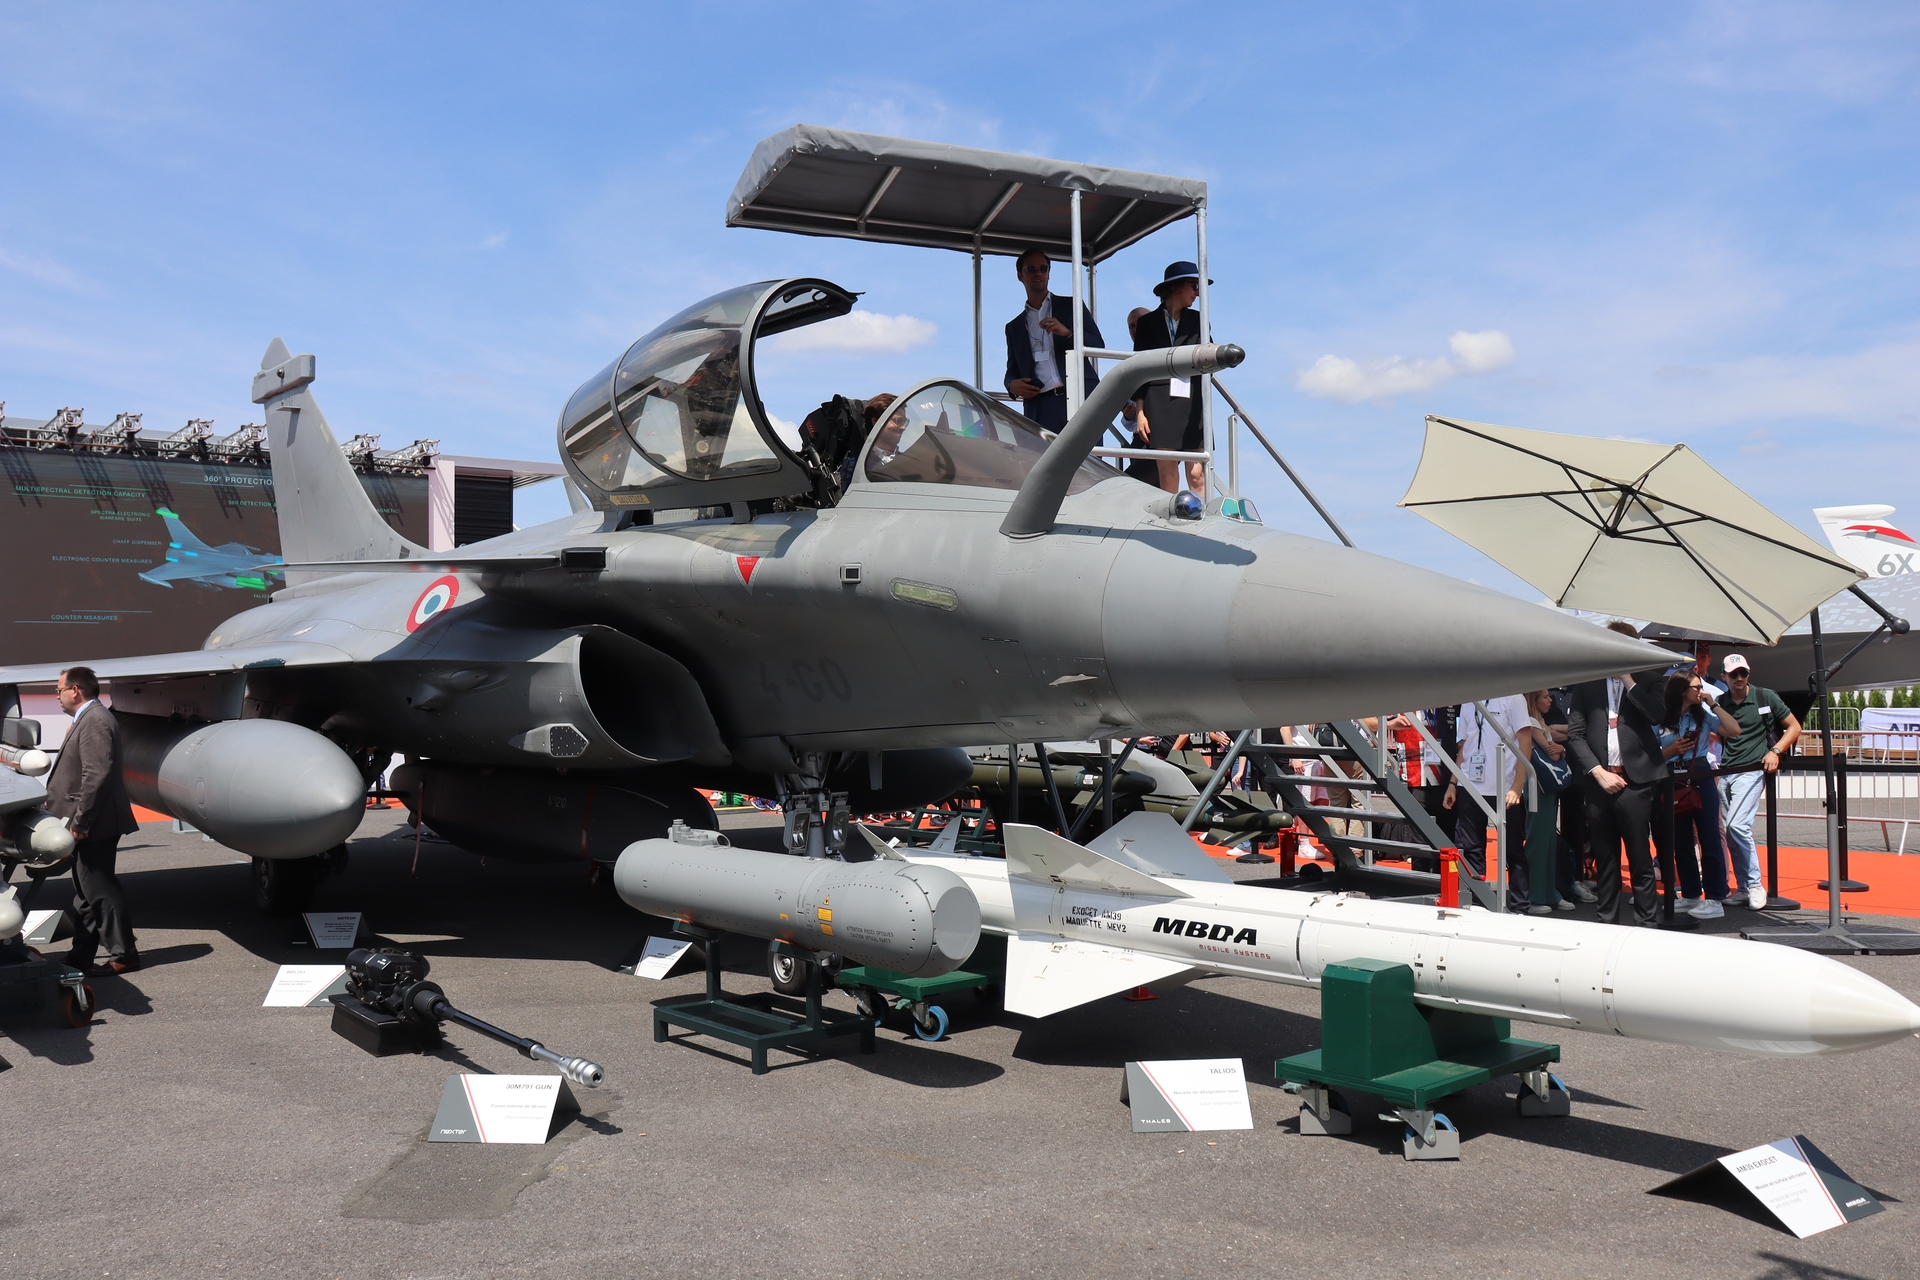 Ezt a Rafale negyedik generációs, szuperszonikus vadászbombázó repülőgépet a Dassault Aviation a Thales és a Safran közreműködésével már a jövőnek építette. Kialakításában és fölszereltségében már olyan szempontokat is figyelembe vettek, mint a rendszerek kibertámadások elleni védelme